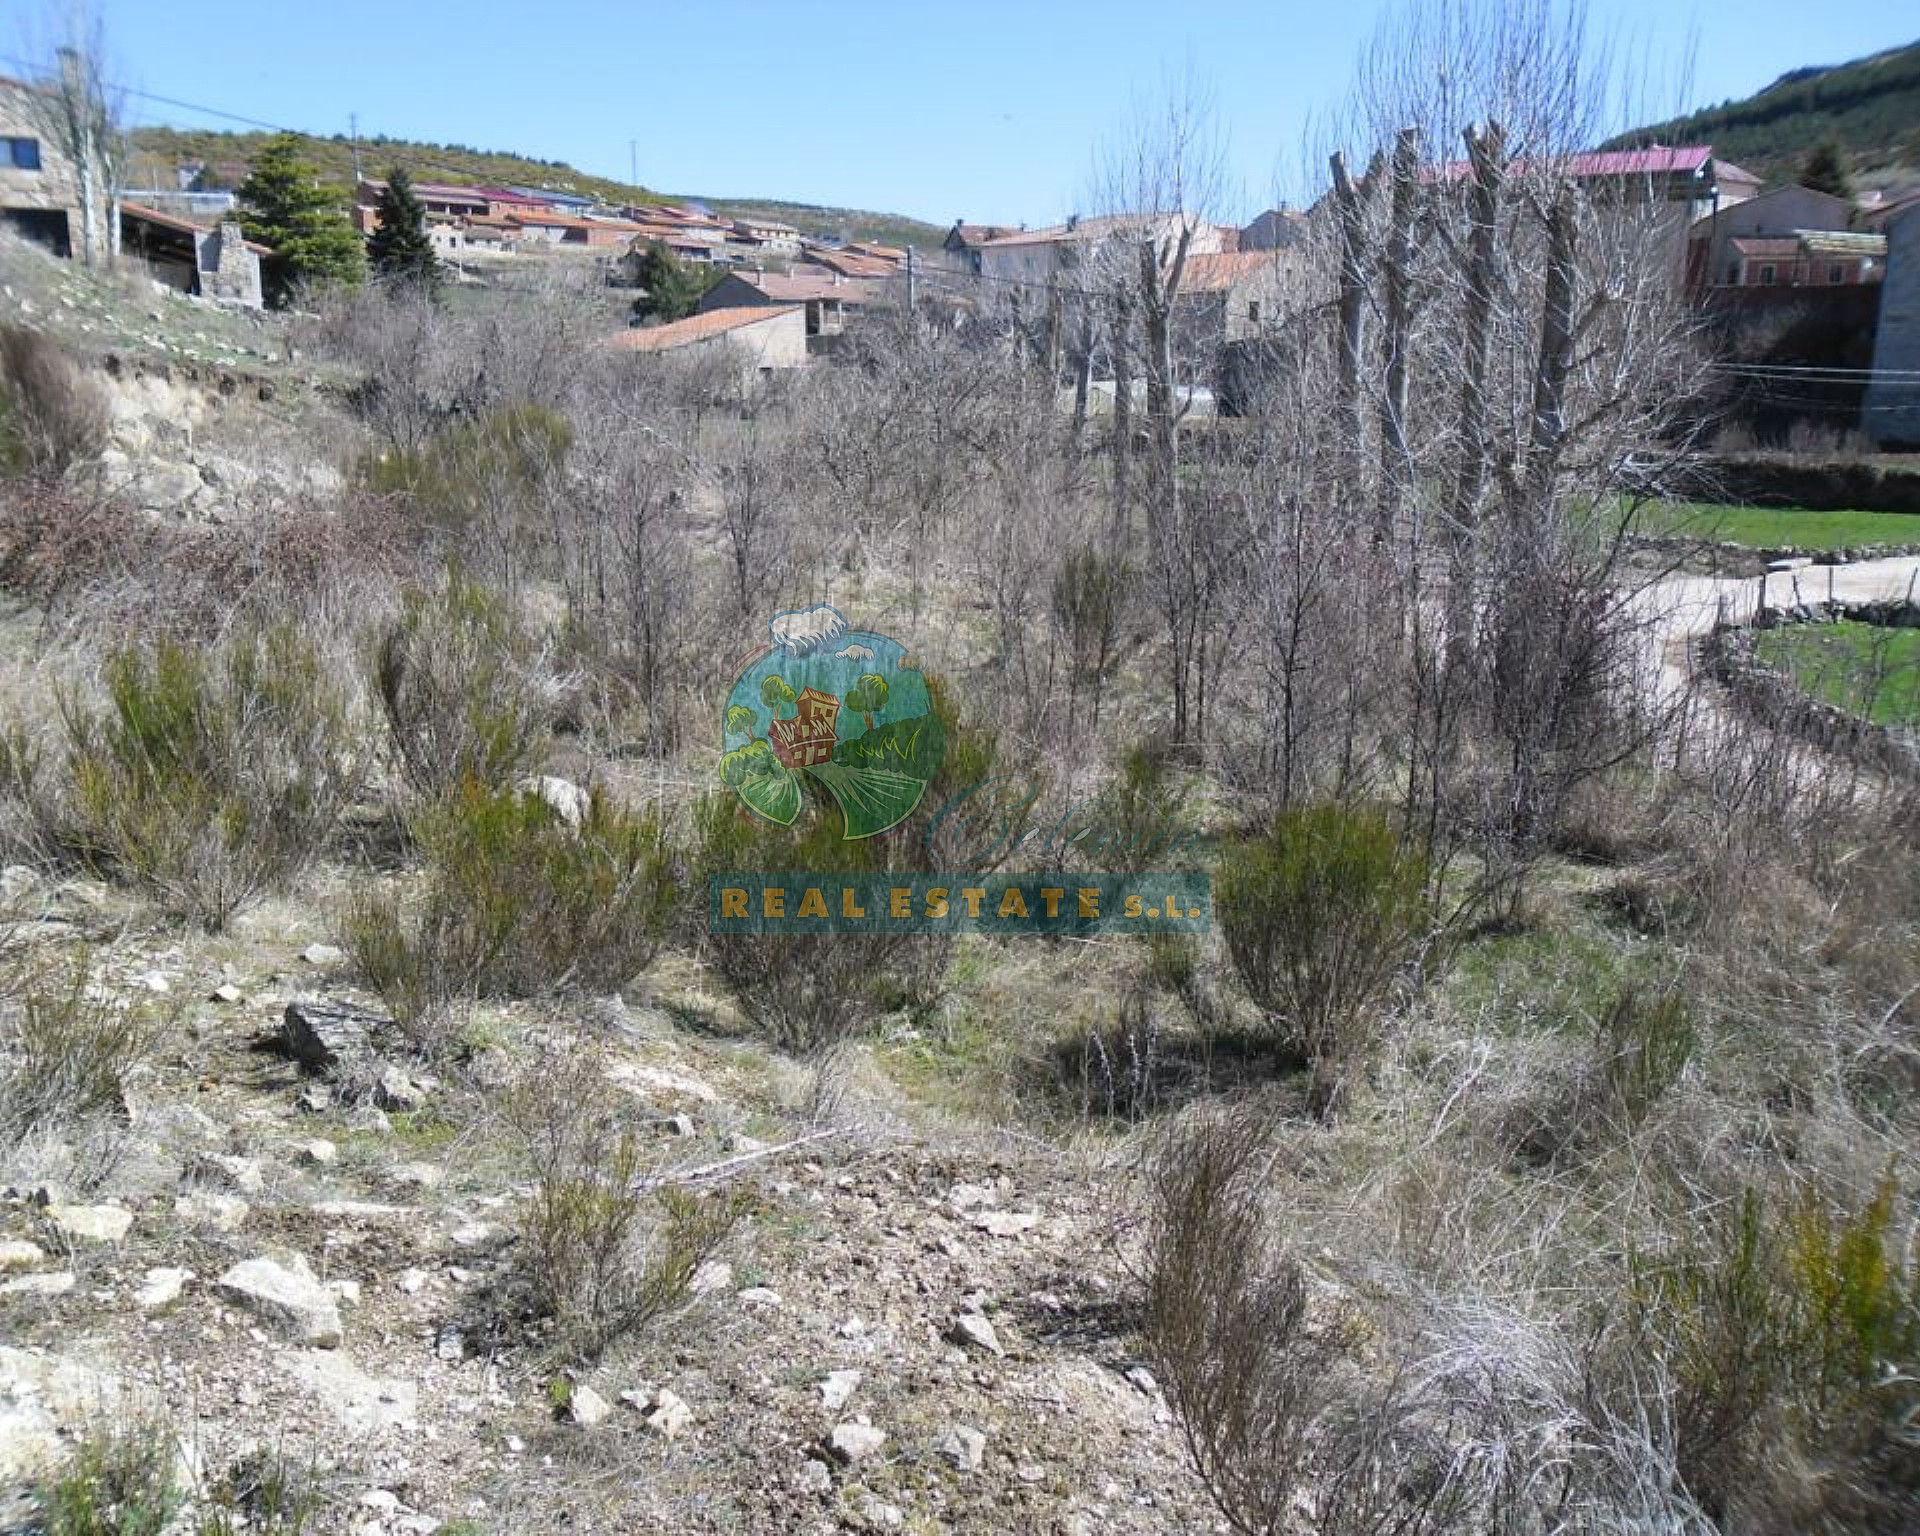 In Sierra de Gredos.